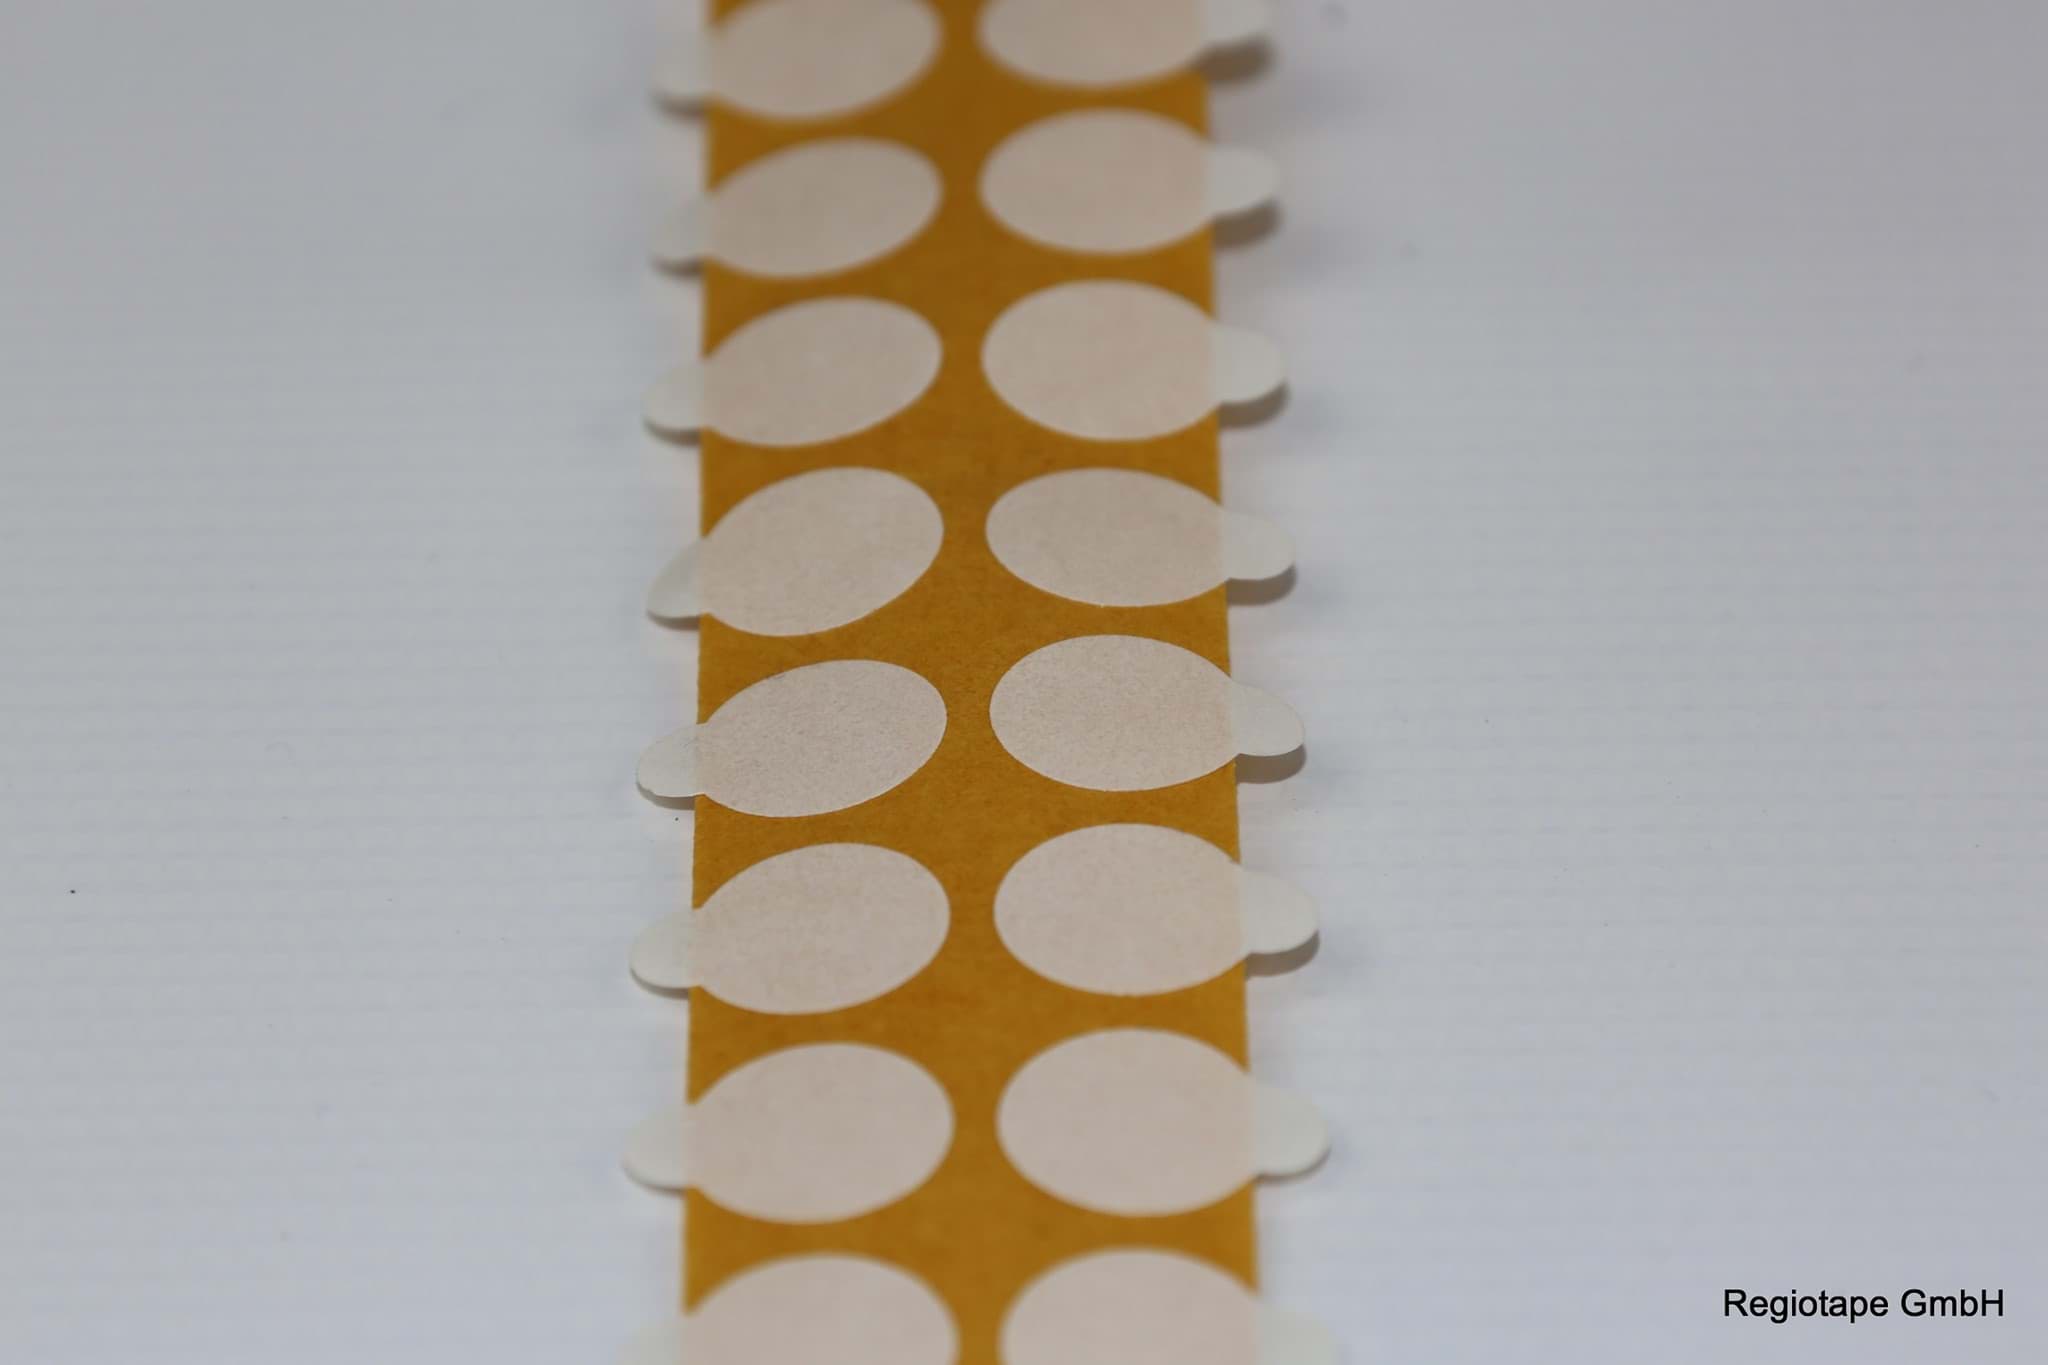 Bild von F22401 doppelseitige Klebepunkte, stark/stark, 20 mm rund mit Lasche, Acrylatkleber, 0,11 mm Dicke, 5.000 Stück pro Rolle